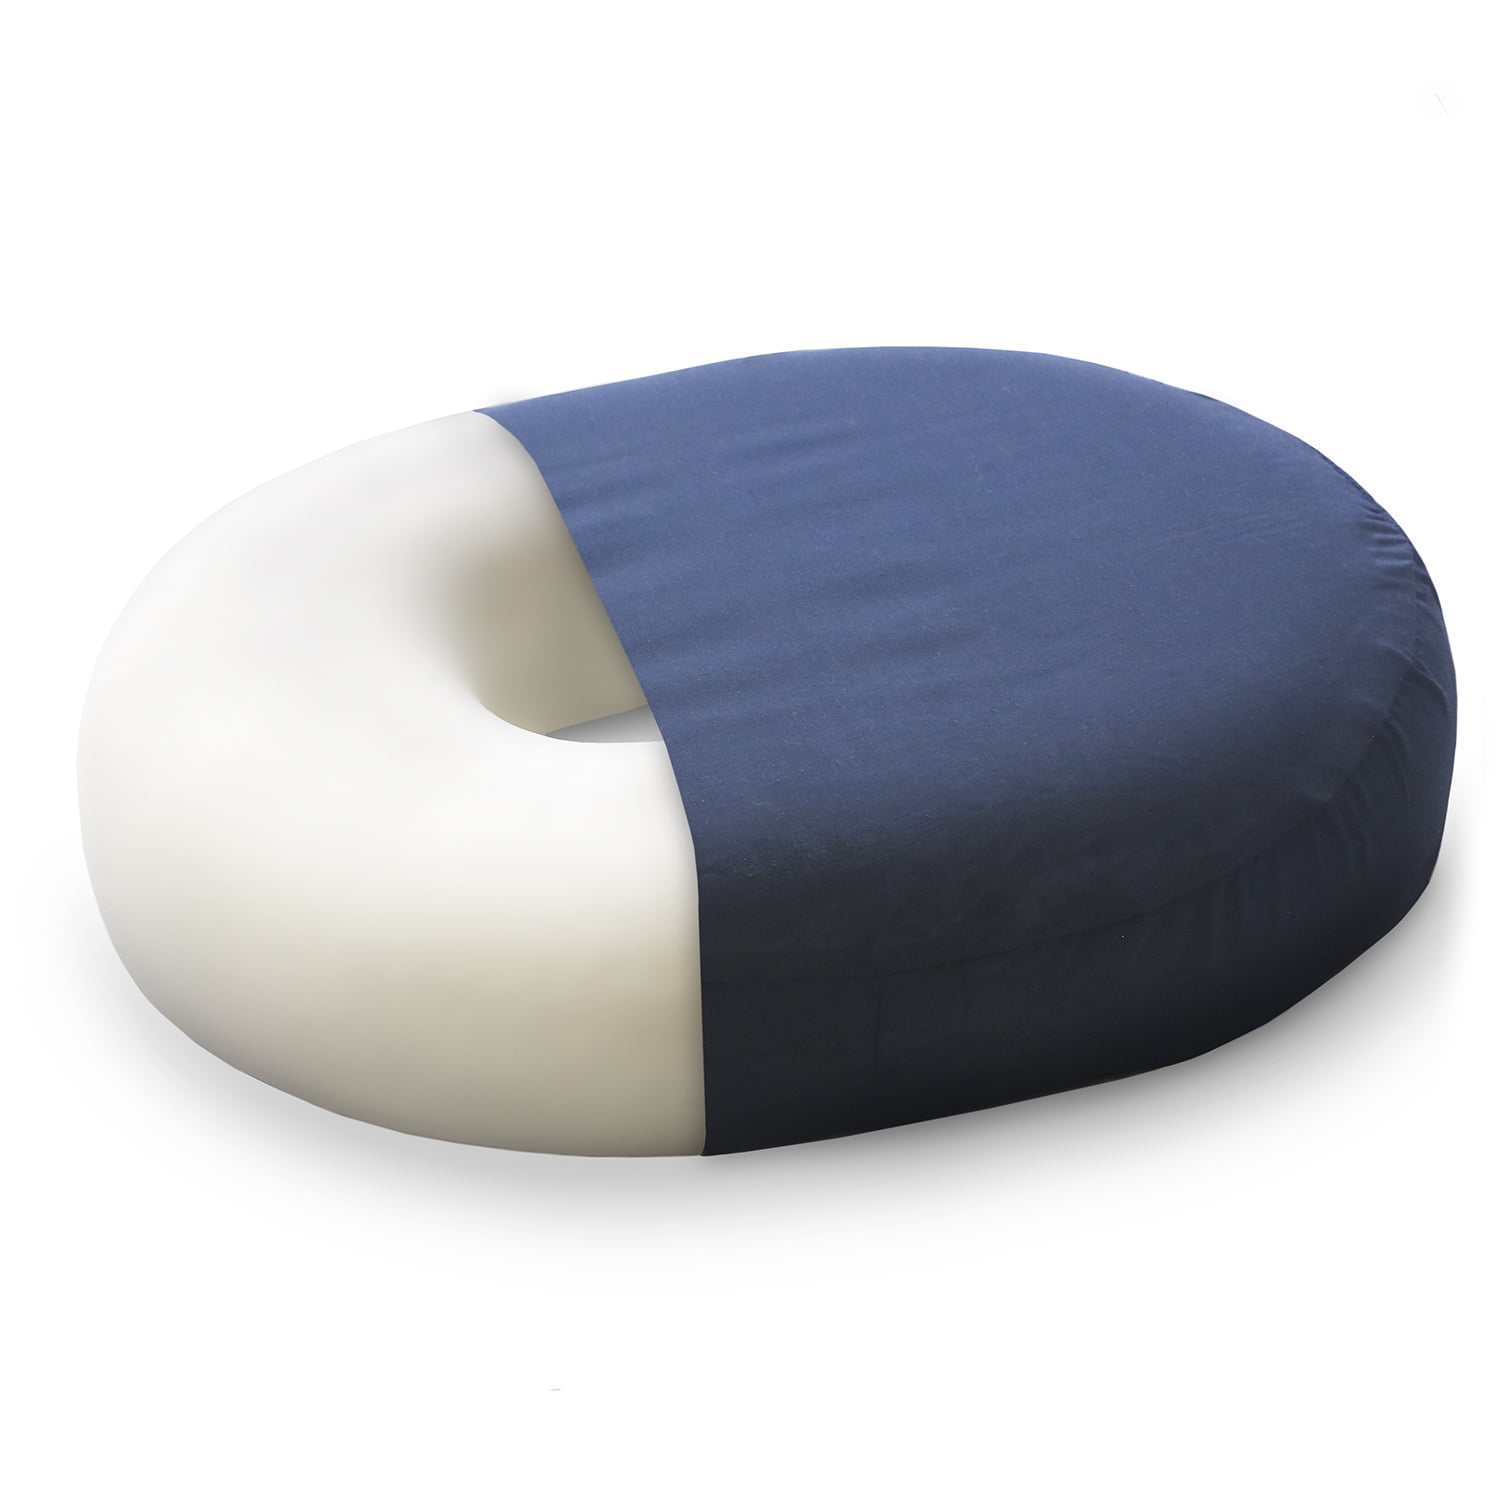 donut seat cushion for tailbone pain